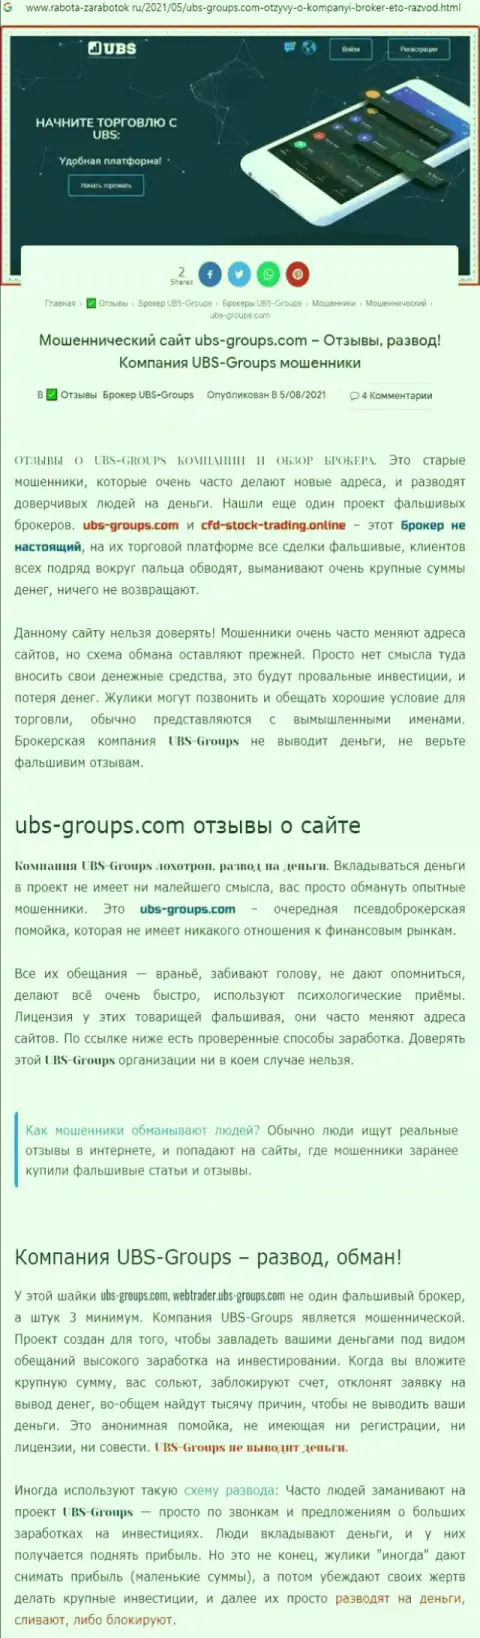 Автор отзыва заявляет, что UBS-Groups - это МОШЕННИКИ !!!